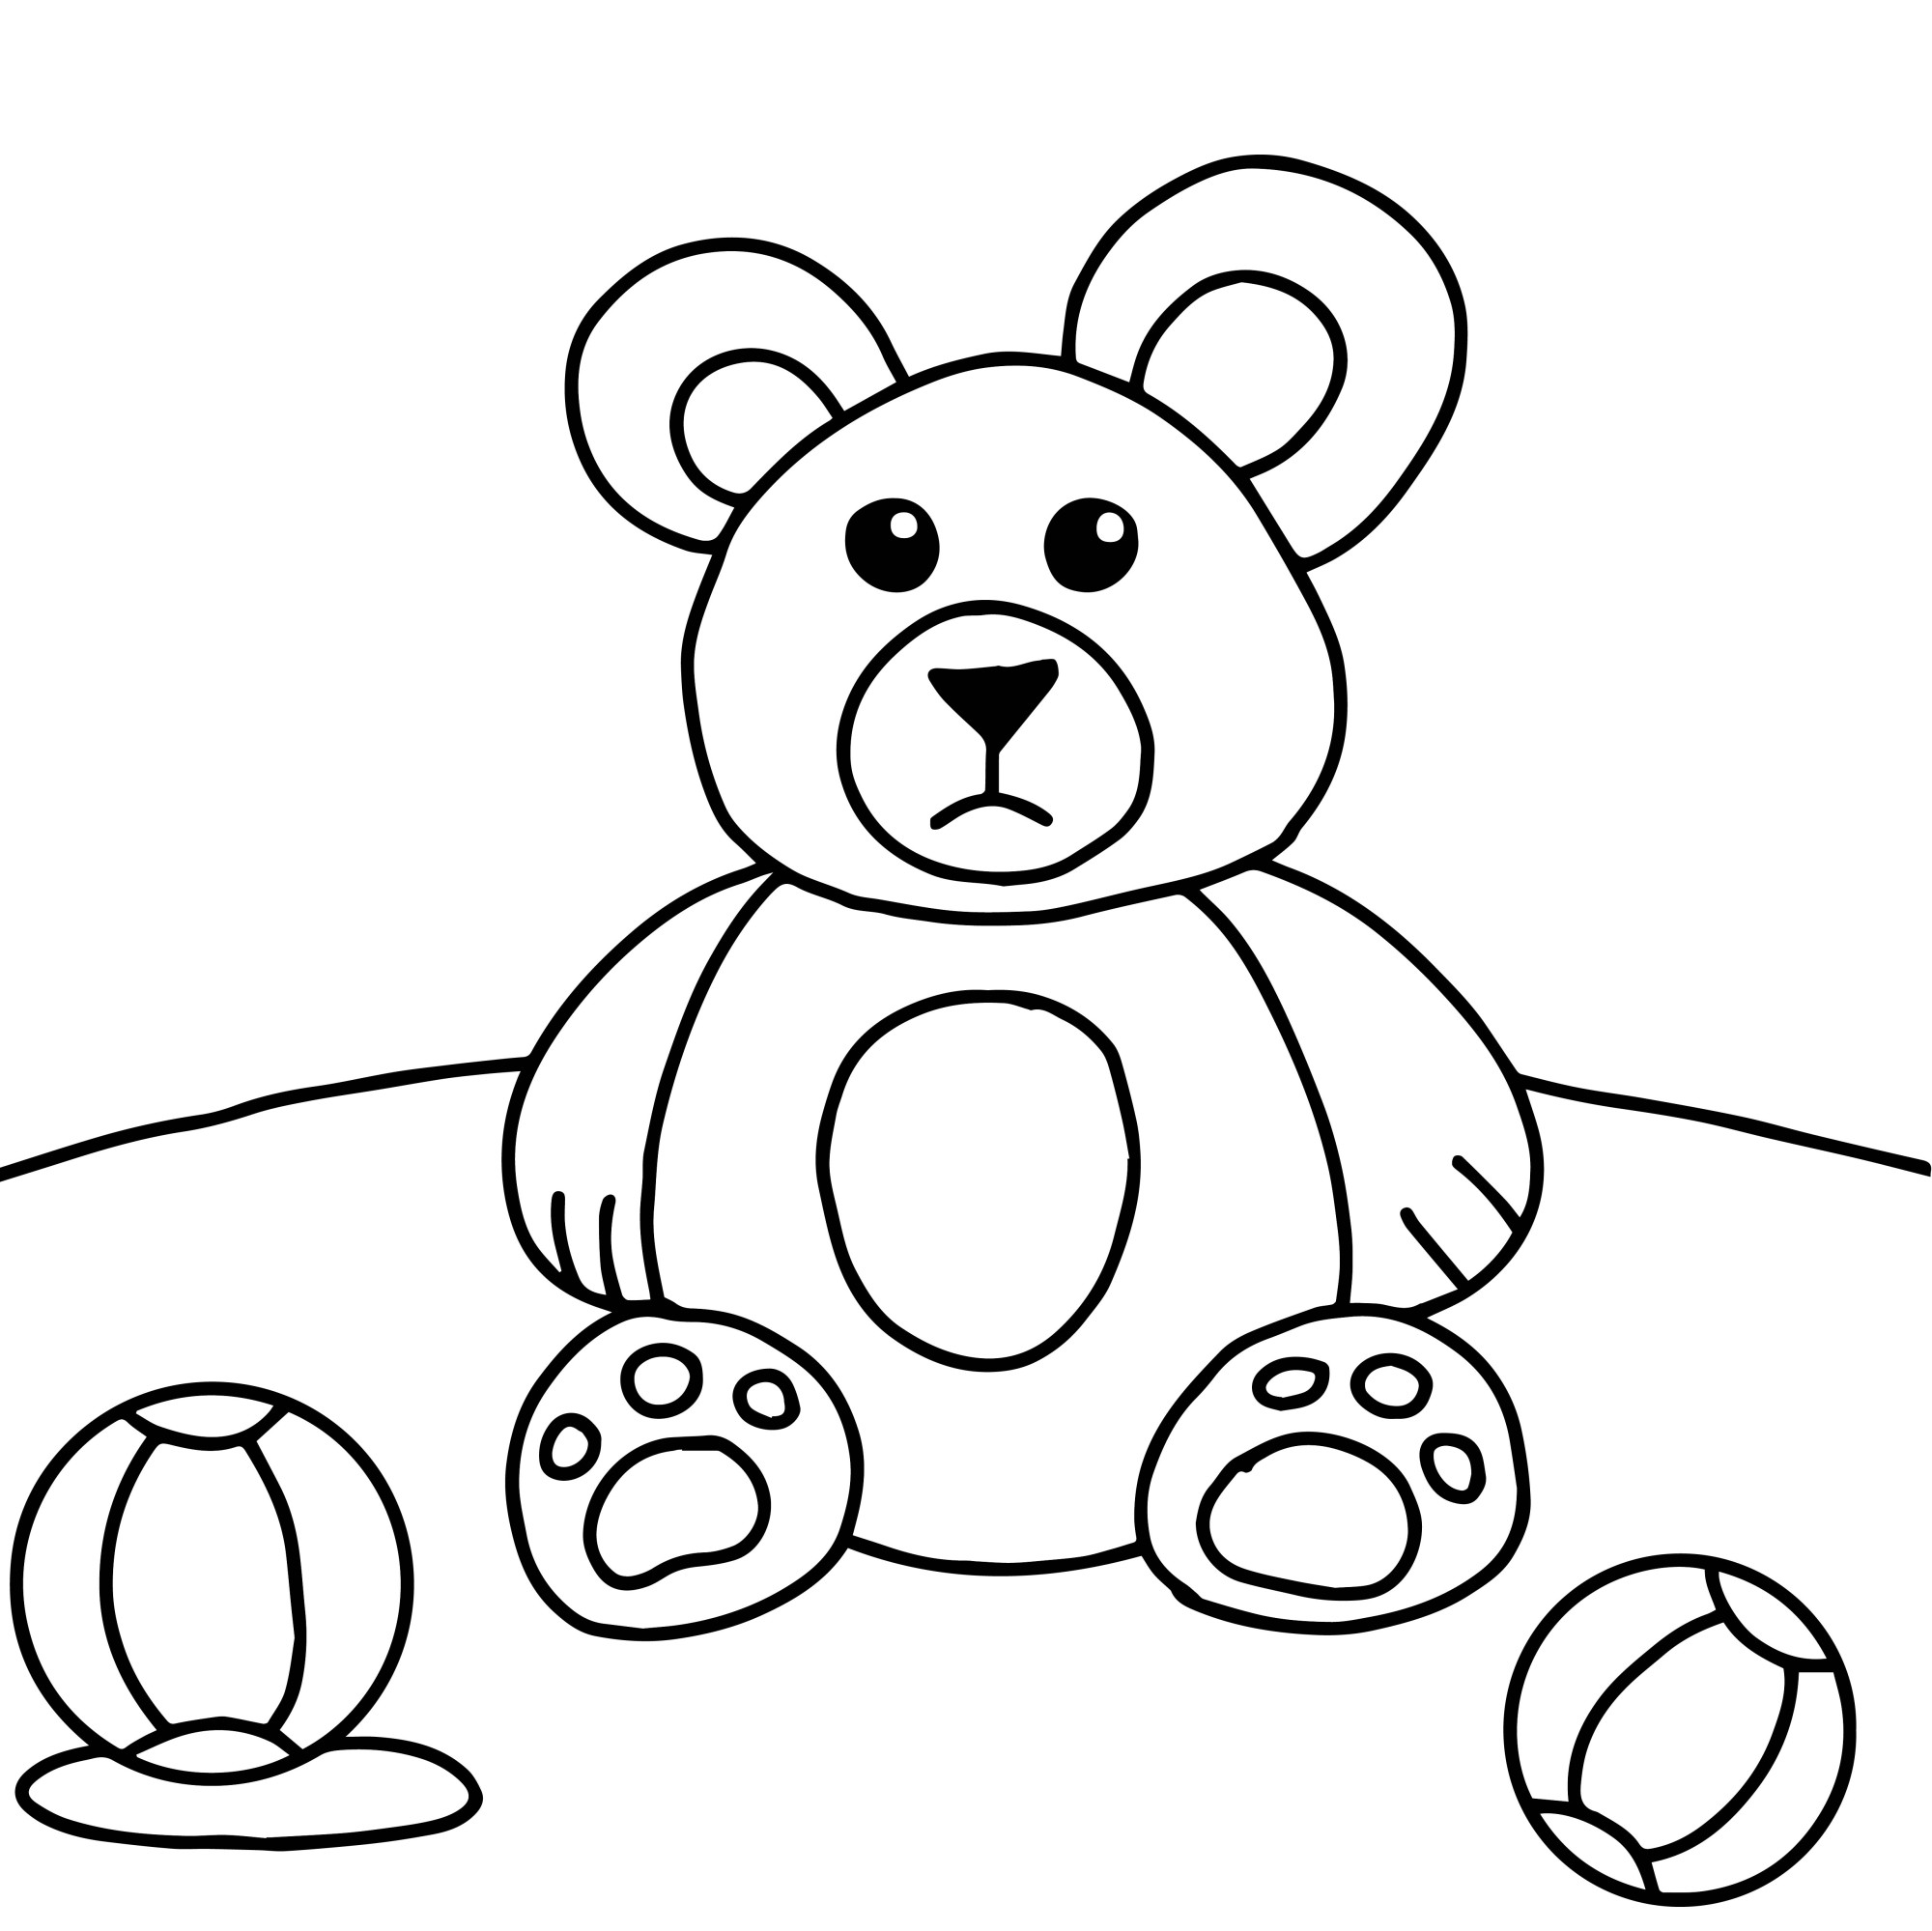 Раскраска для детей: мягкая игрушка медведь с мячиками